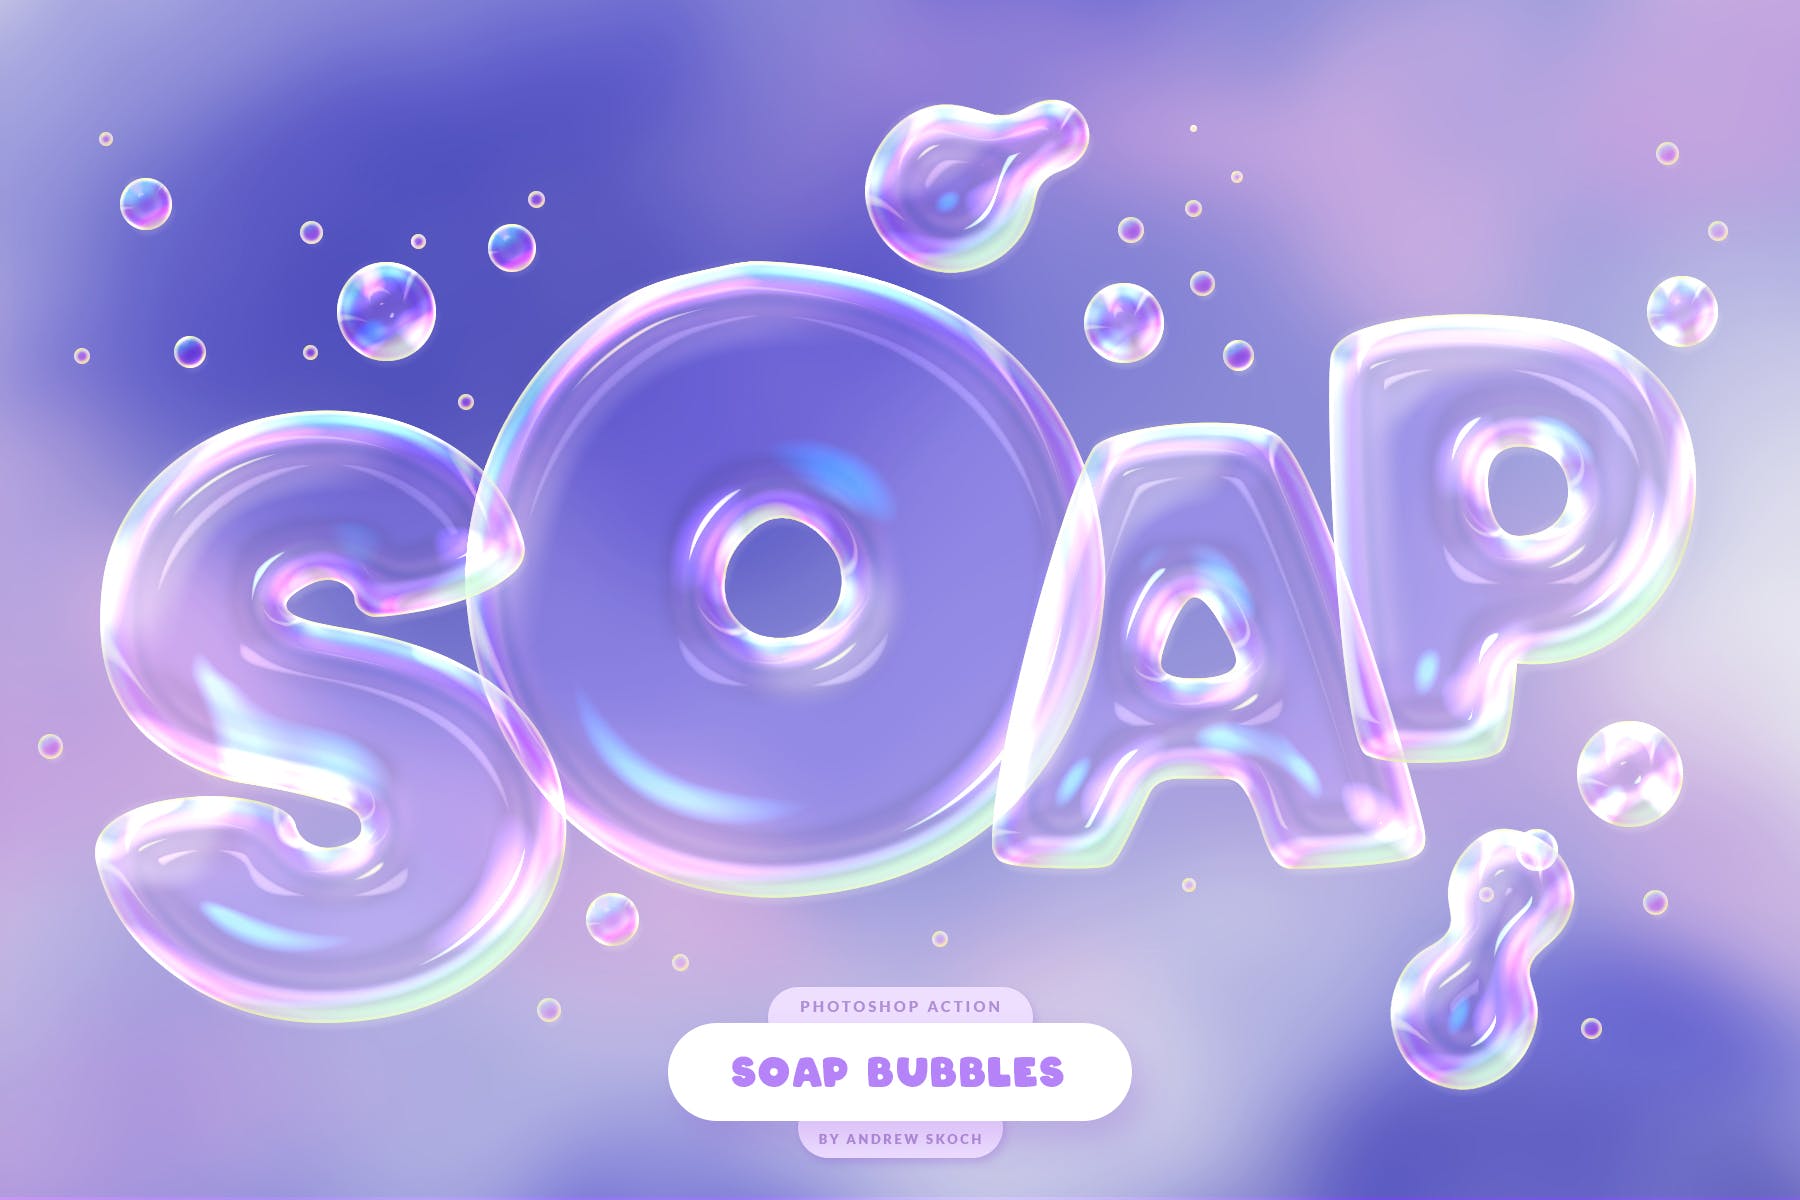 肥皂泡文字特效蚂蚁素材精选PS动作 Soap Bubbles Photoshop Action插图(3)